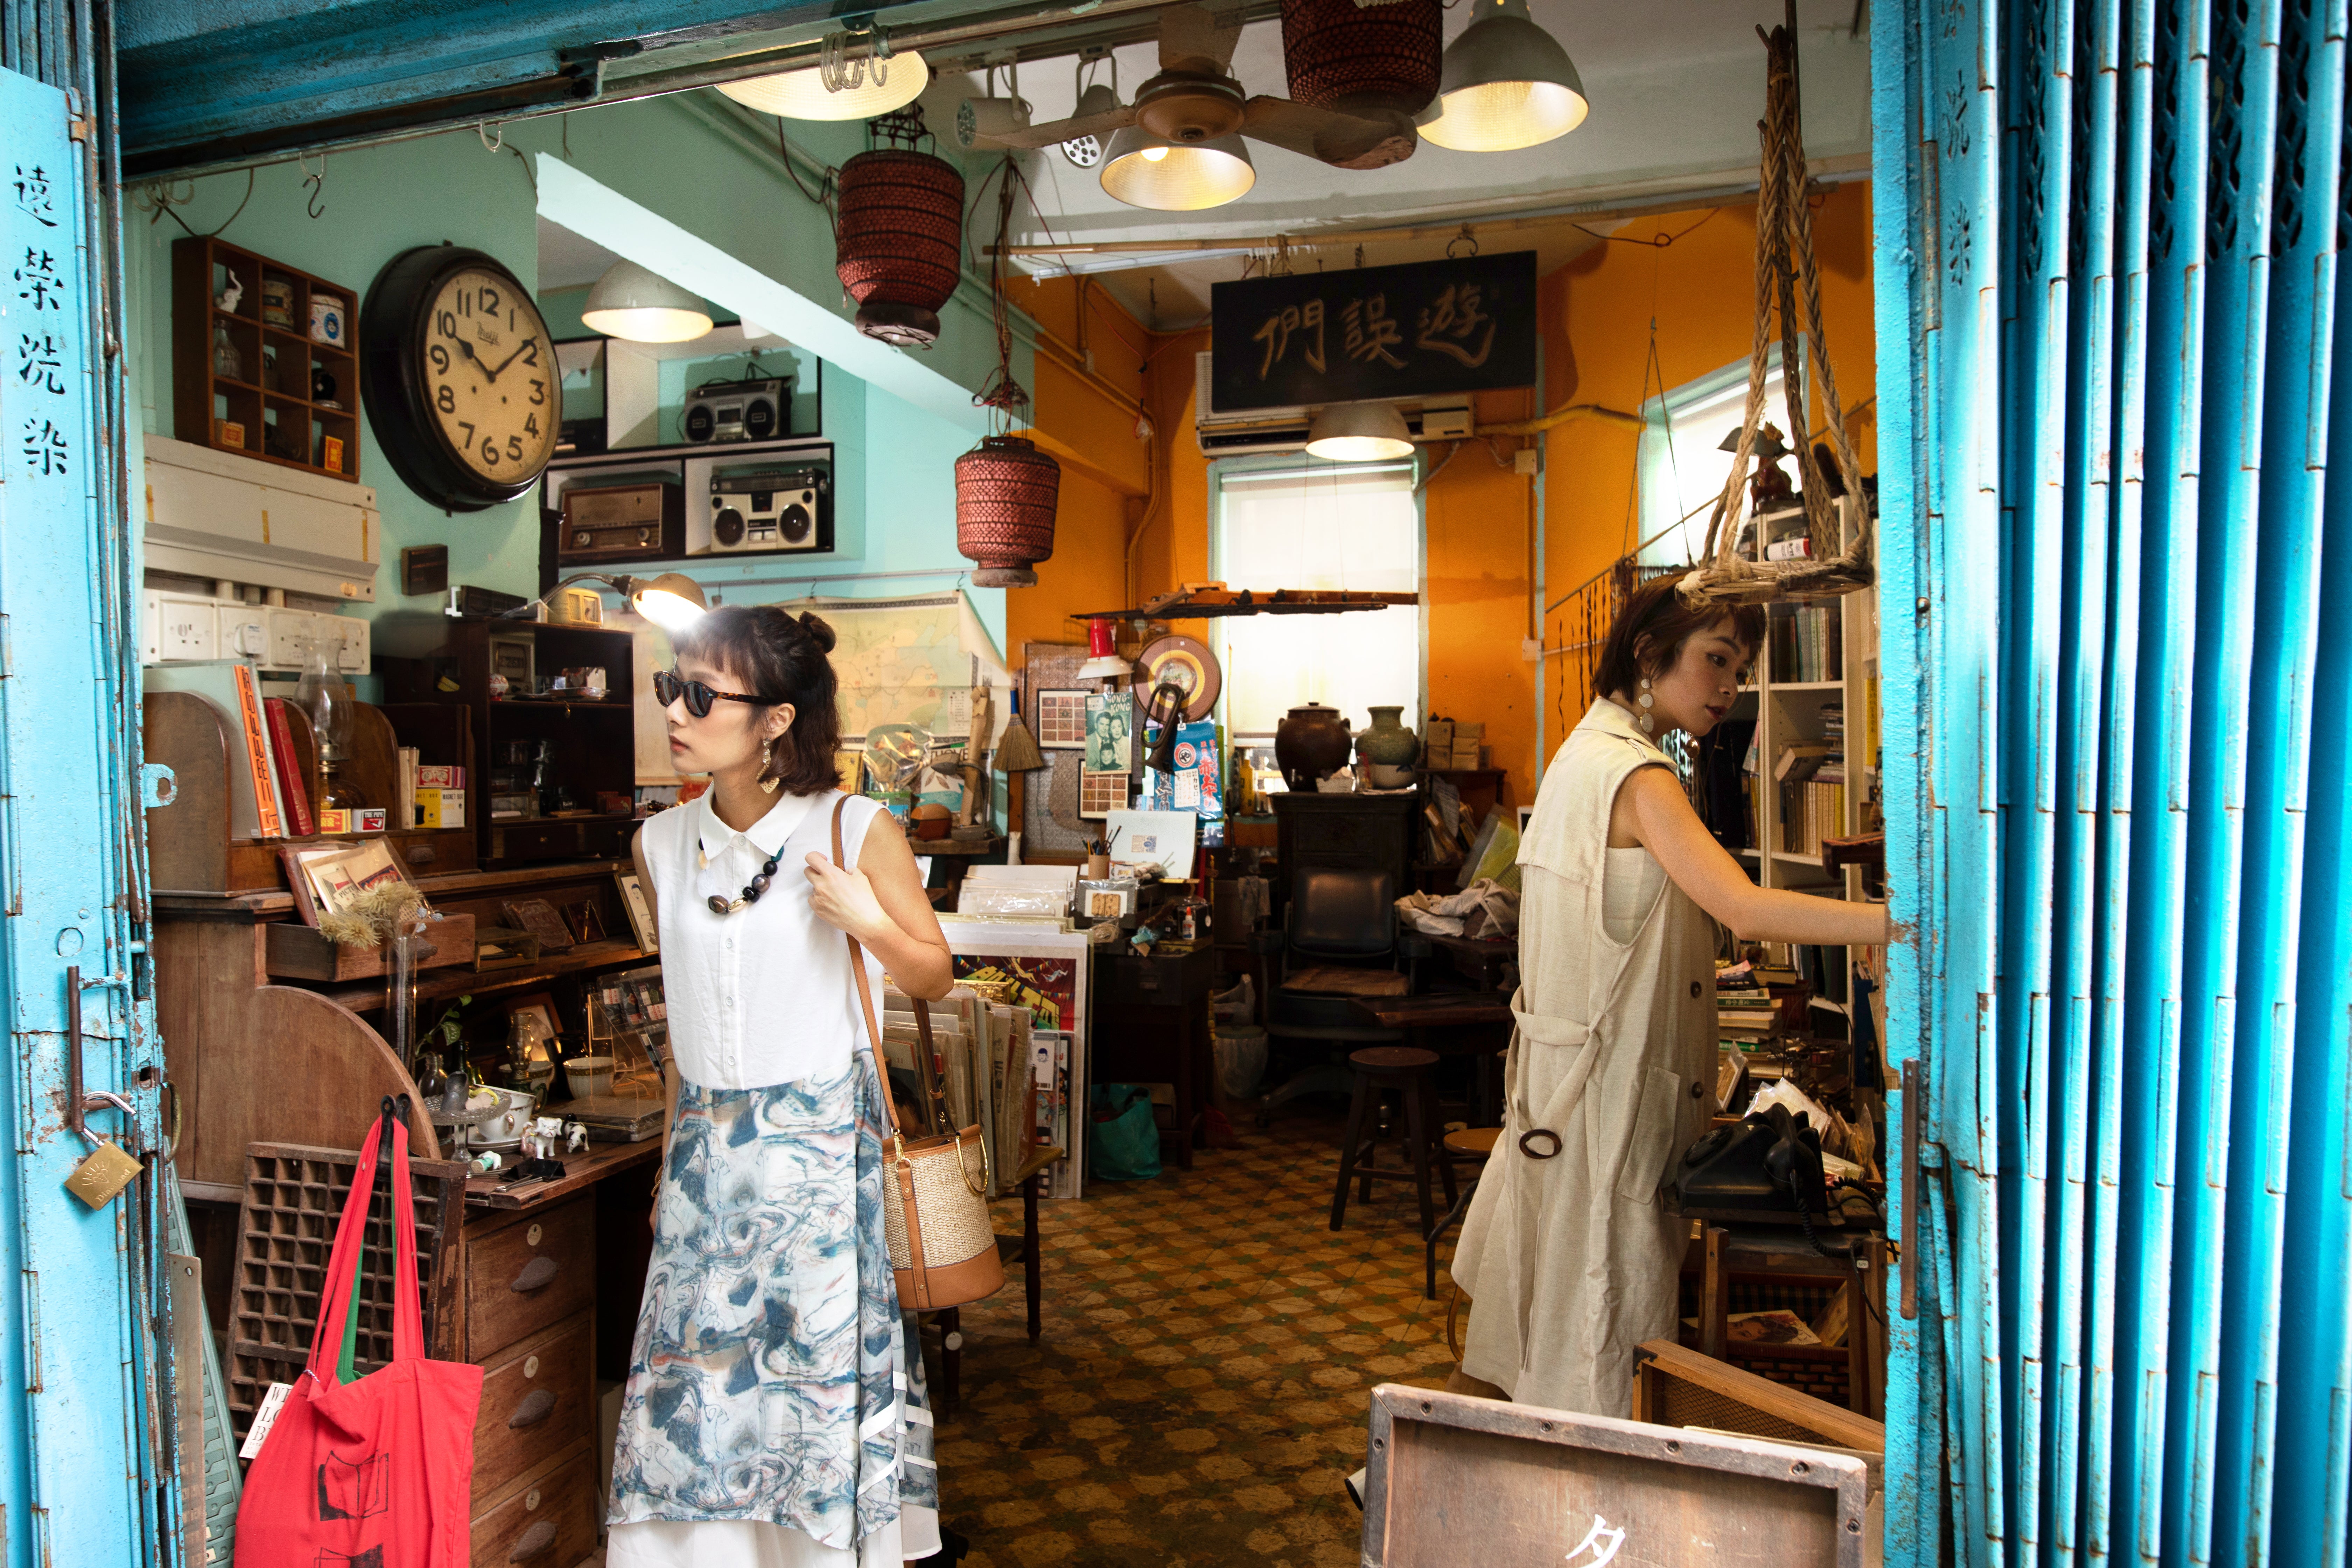 guide　neighbourhoods　The　An　insider's　Kong's　best　to　Hong　Independent